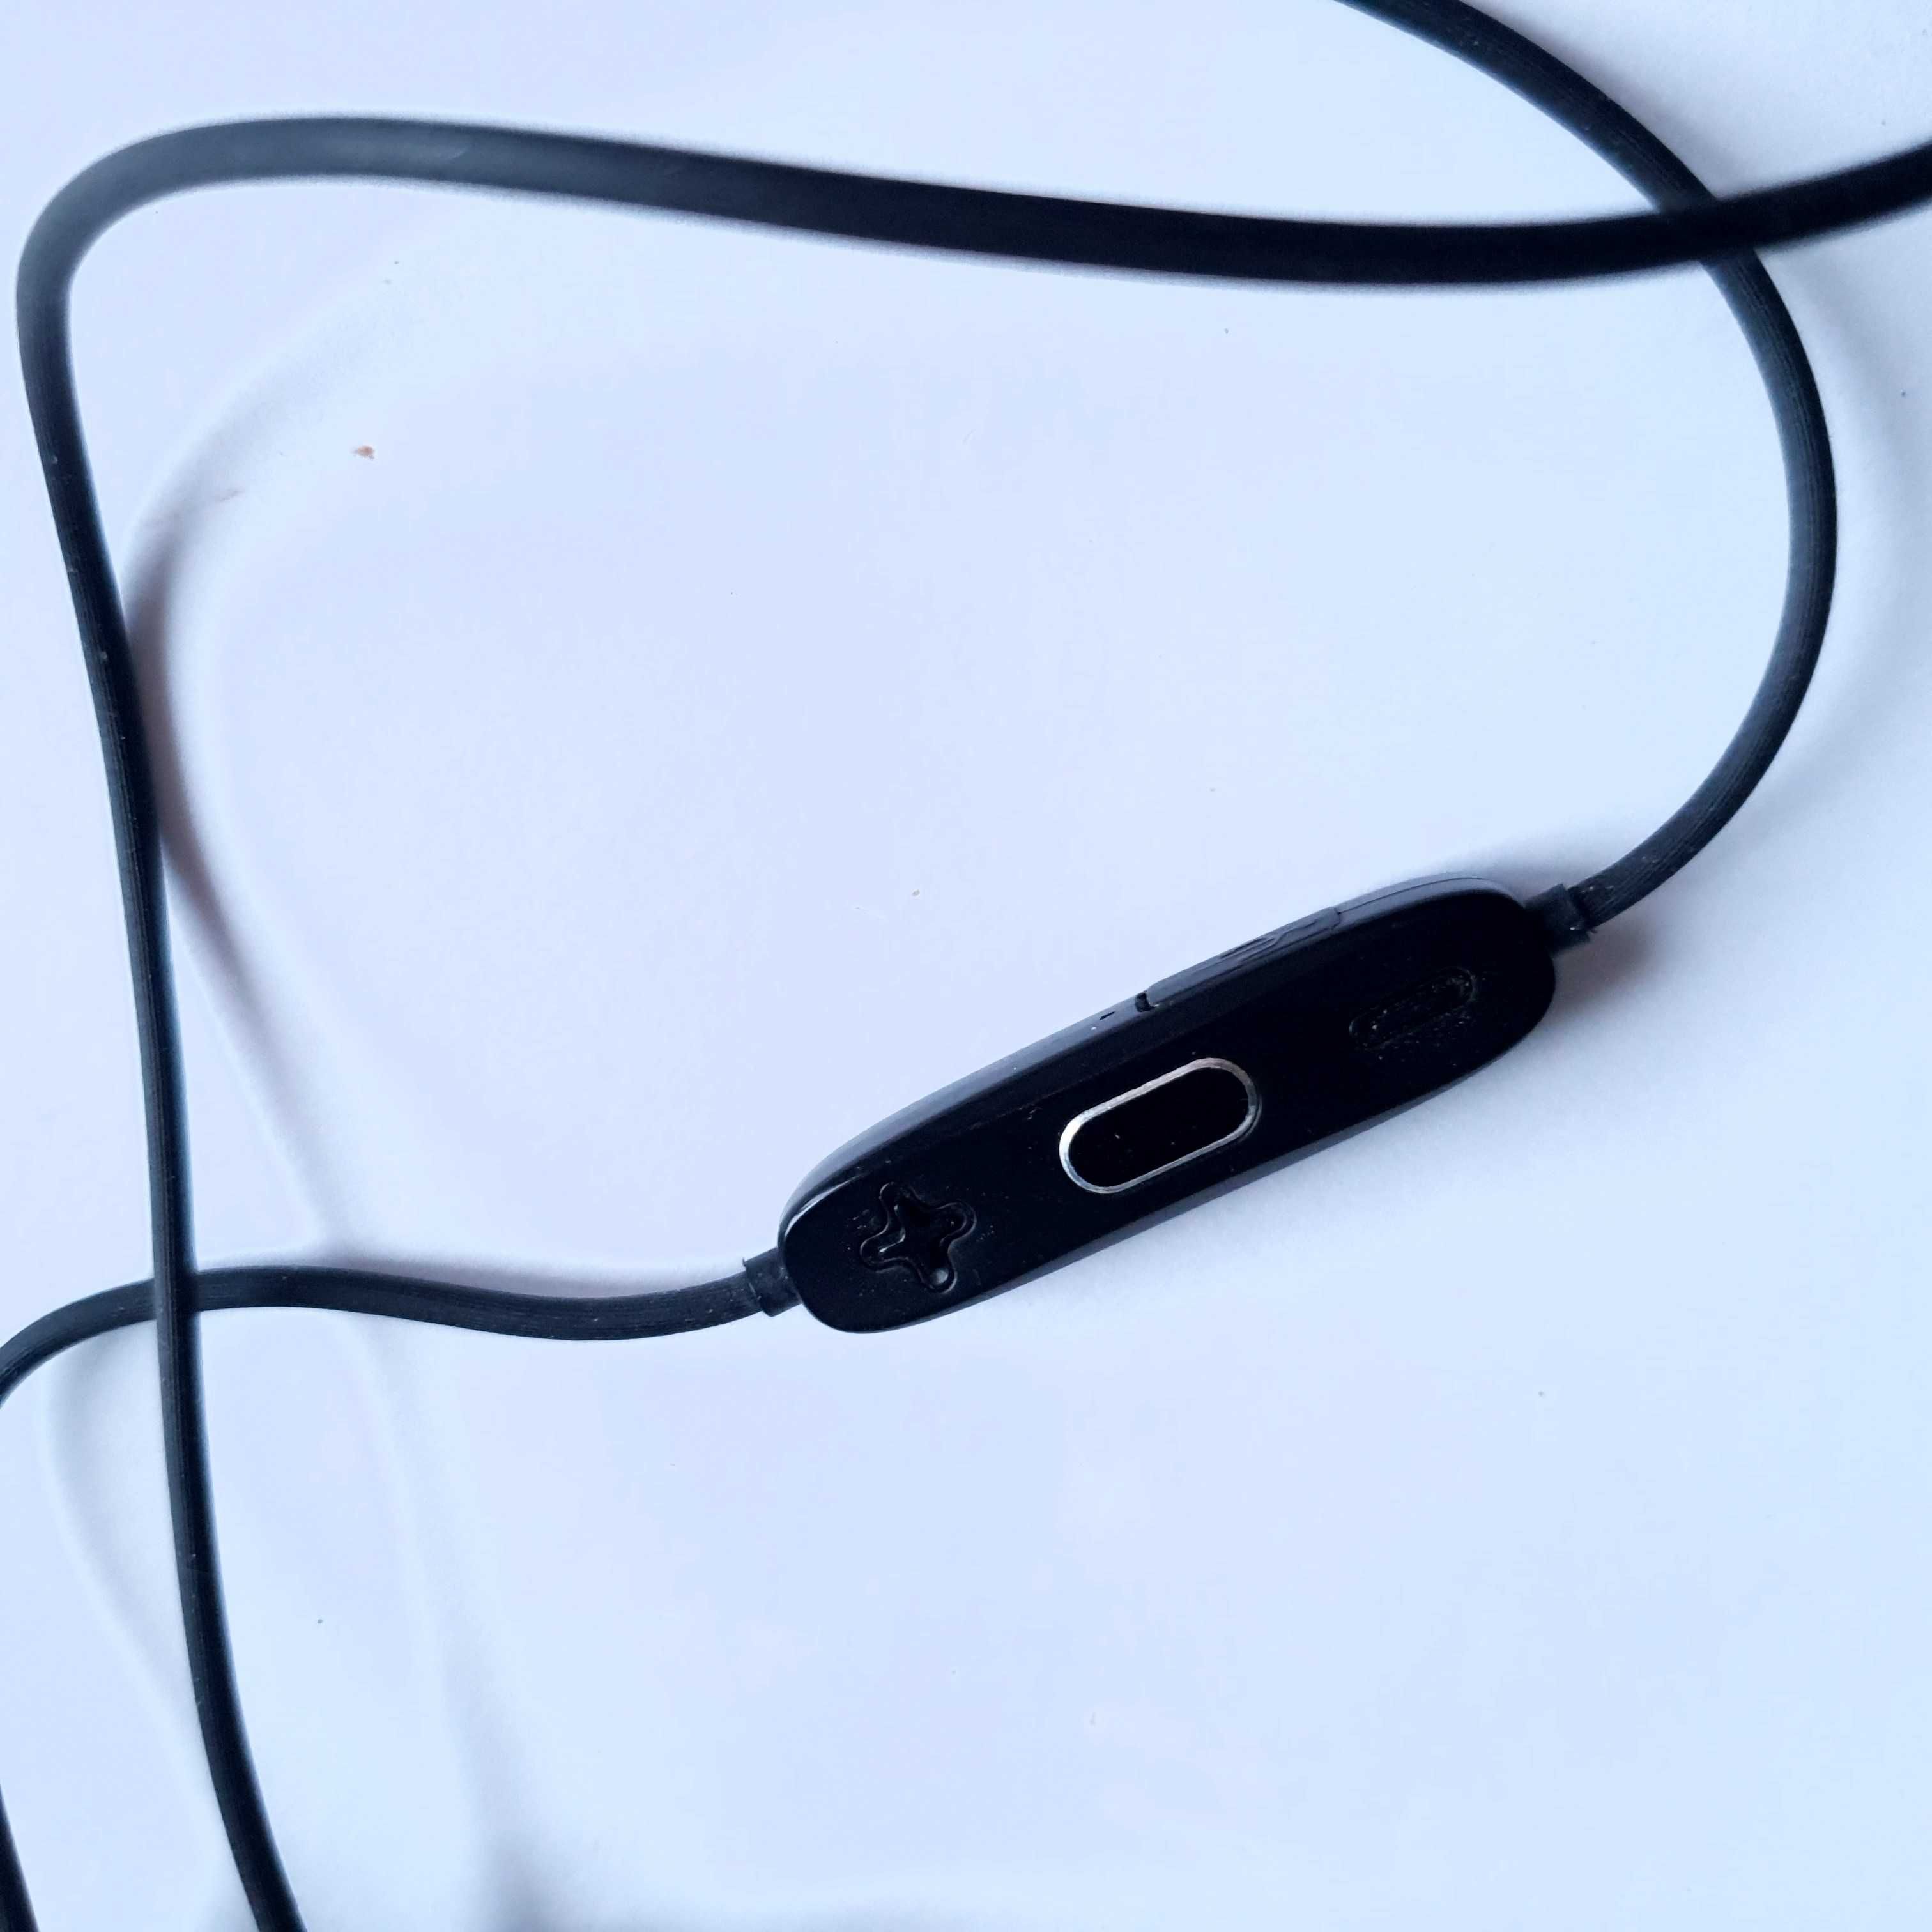 Bluetooth наушники навушники picun h18